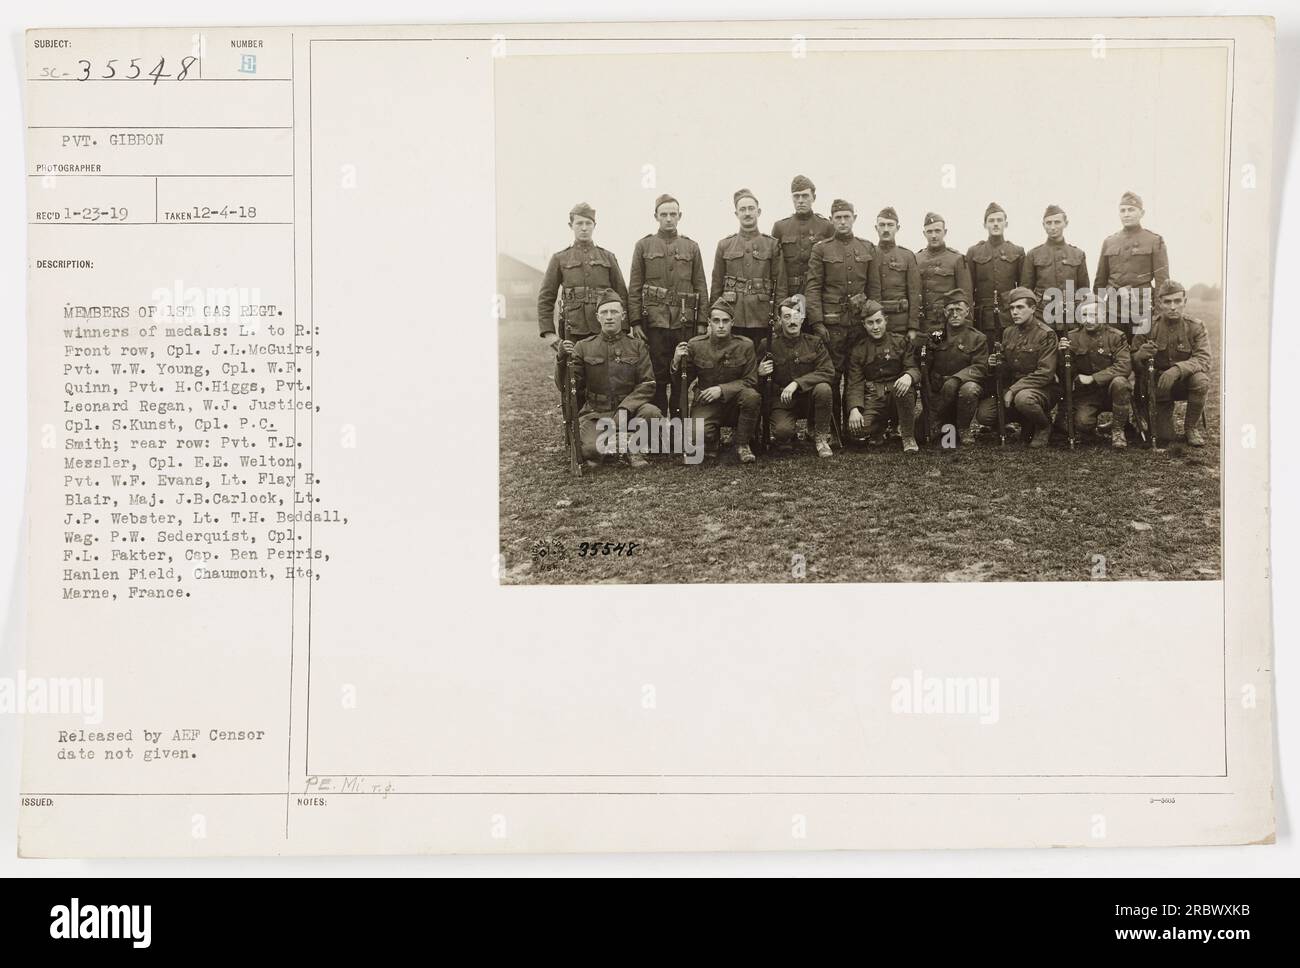 I membri del 1st gas Regiment, vincitori di medaglie, posano per una foto. In prima fila, da sinistra a destra: CPL. J.L. McGuire, Pvt. W.W. Giovane, comandante W. Quinn, Pvt. H.C. Higgs, Pvt, Leonard Regan, W.J. Justice, Cpl. S. Kunst e Cpl. P.C. Smith. Nella fila posteriore: D.T. Pvt Messler, Cpl. E.E. Welton, Pvt. W.F. Evans, tenente Flay B. Blair, Mej. J.B. CarLock, L. J.P. Webster, tenente T.H. Beddall, Weg. P.W. Sederquist, CPL. F.L. Fakter e Cap. Ben Perris. Ubicazione: Hanlen Field, Chaumont, hte, Marne, Francia. Rilasciato da AEP Censor, data non specificata. PE. Mi. Foto Stock